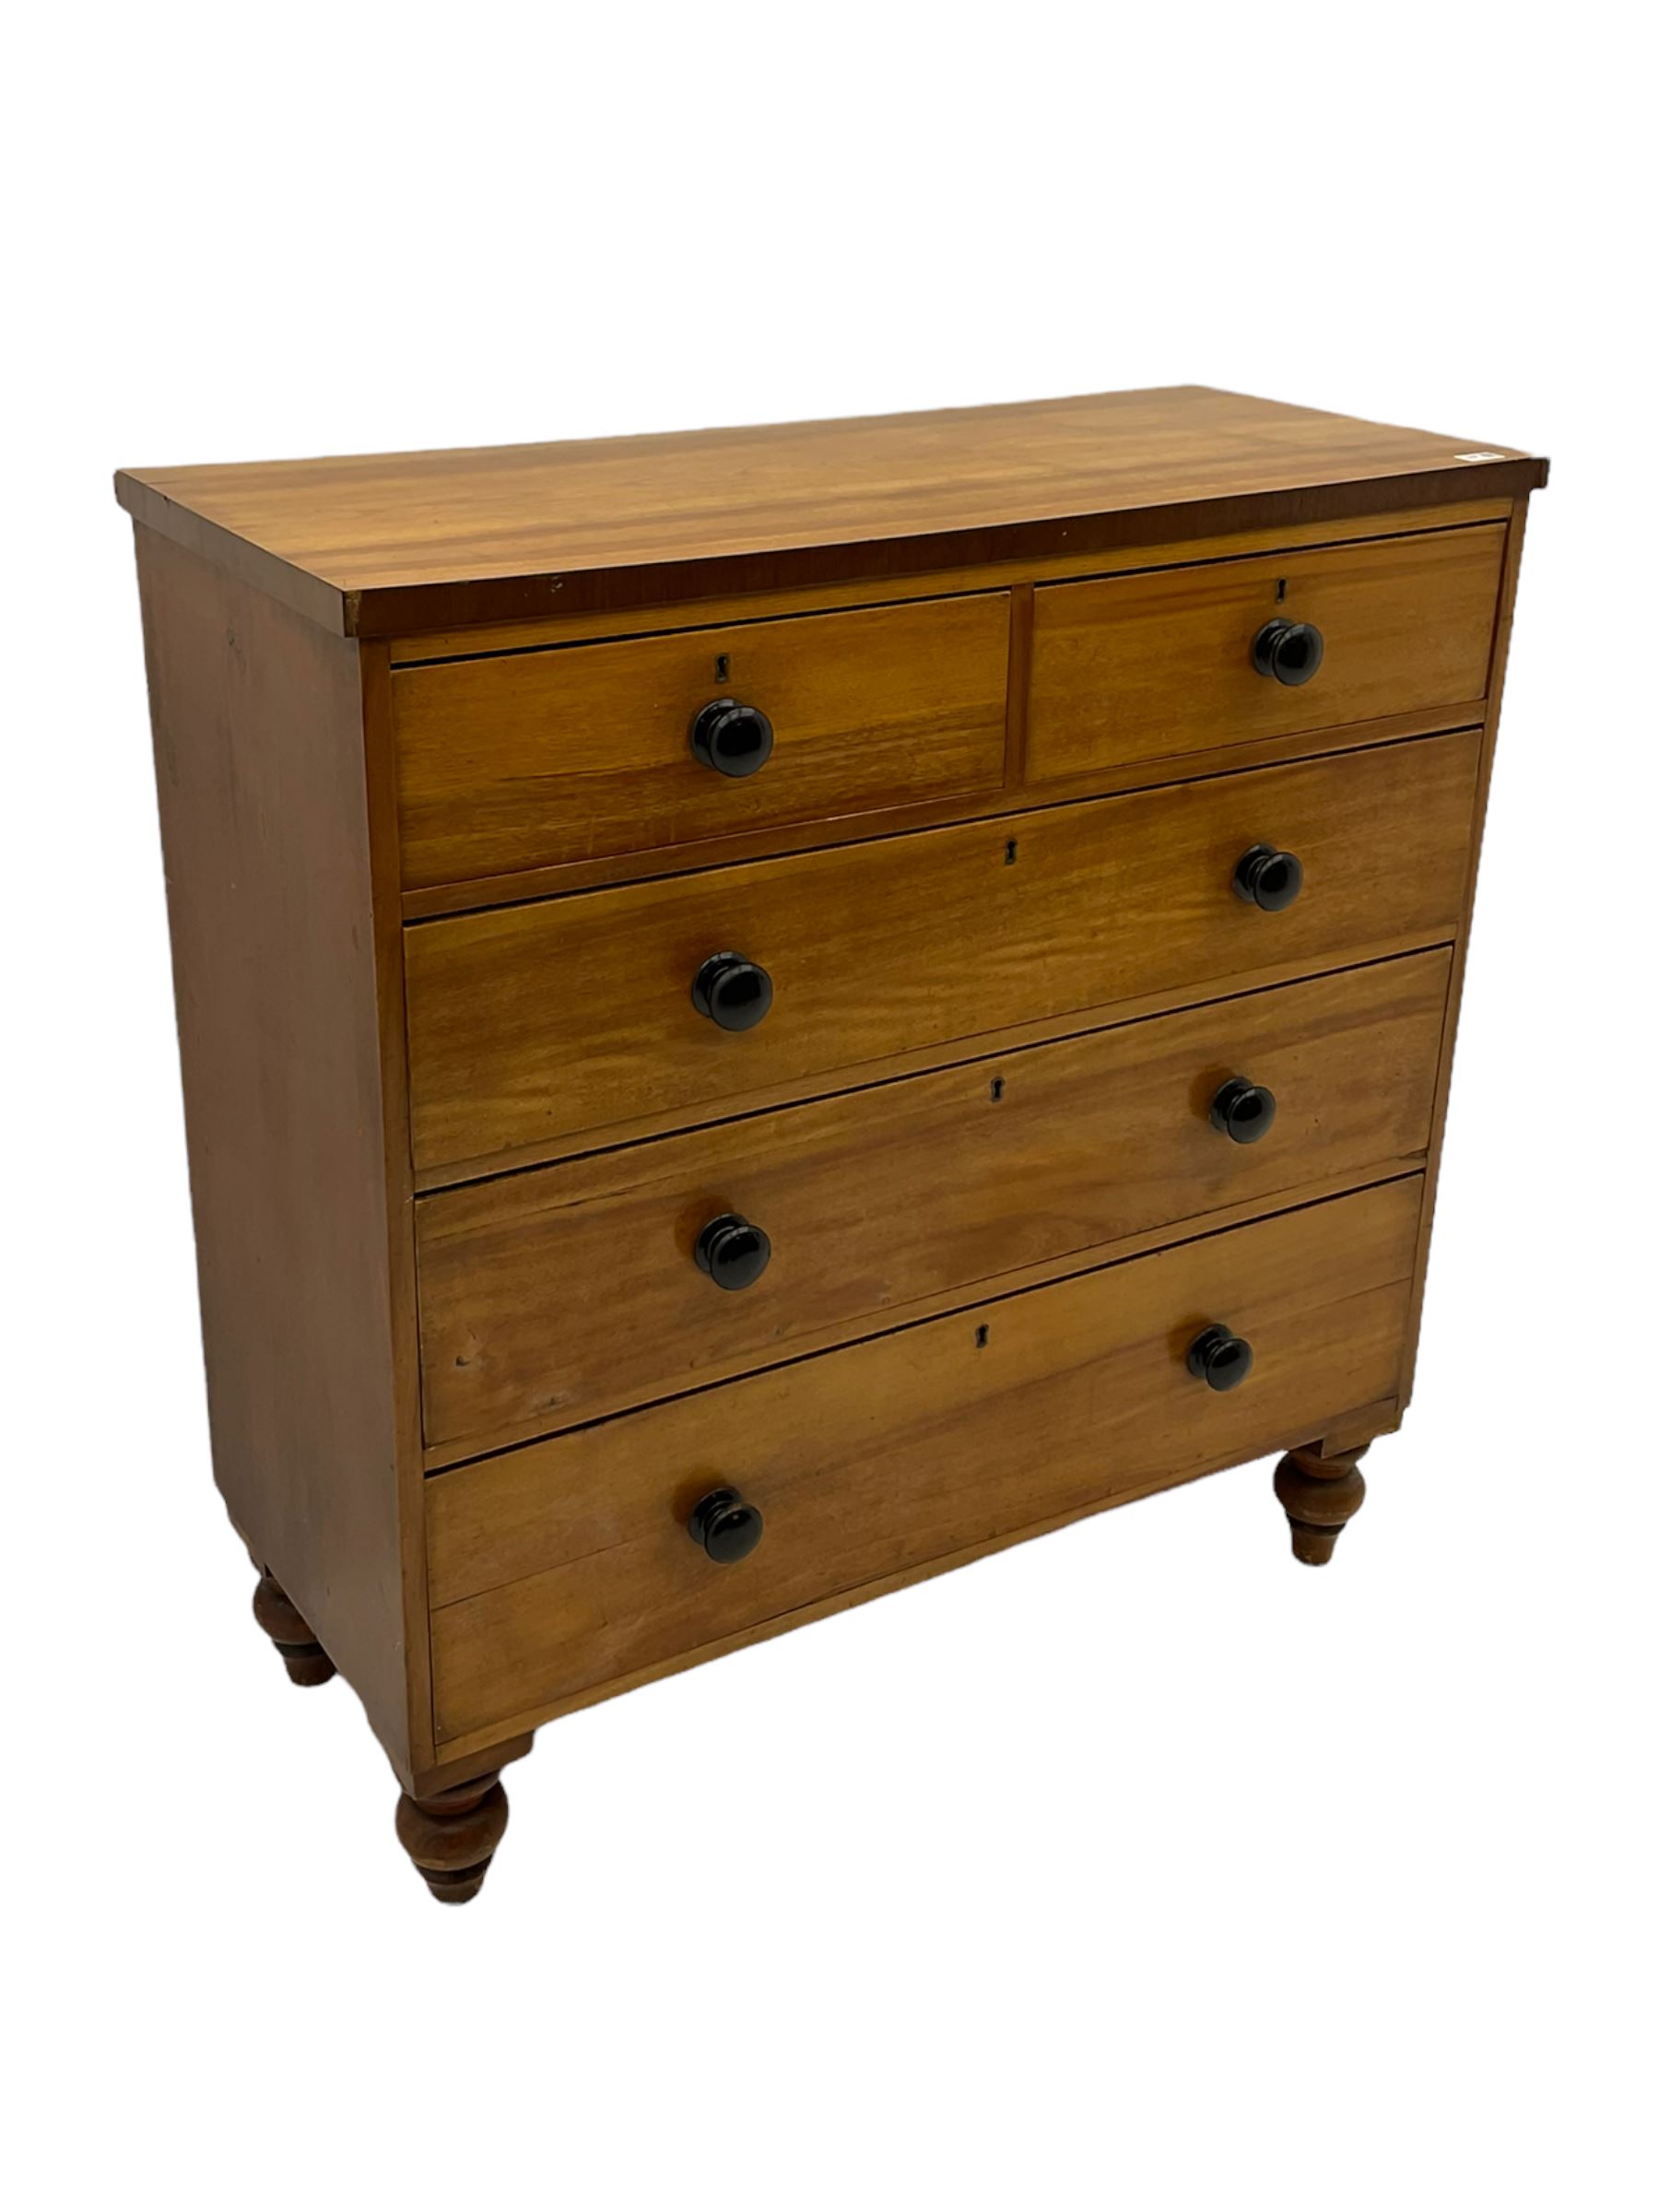 19th century mahogany chest